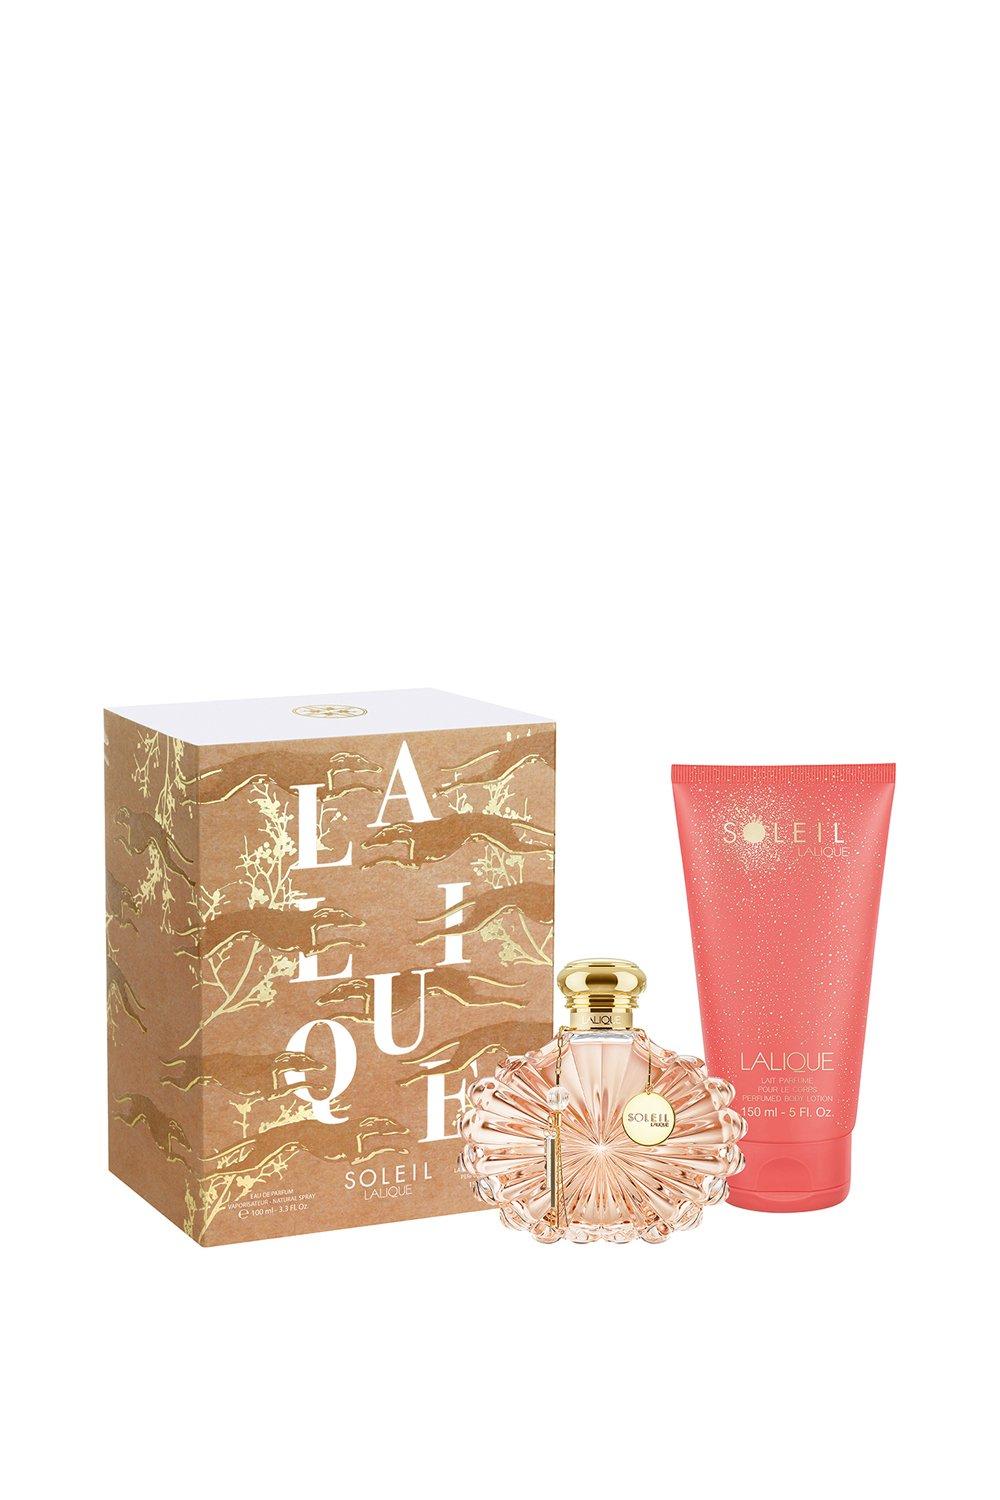 Soleil Lalique Eau De Parfum 100ml Gift Set